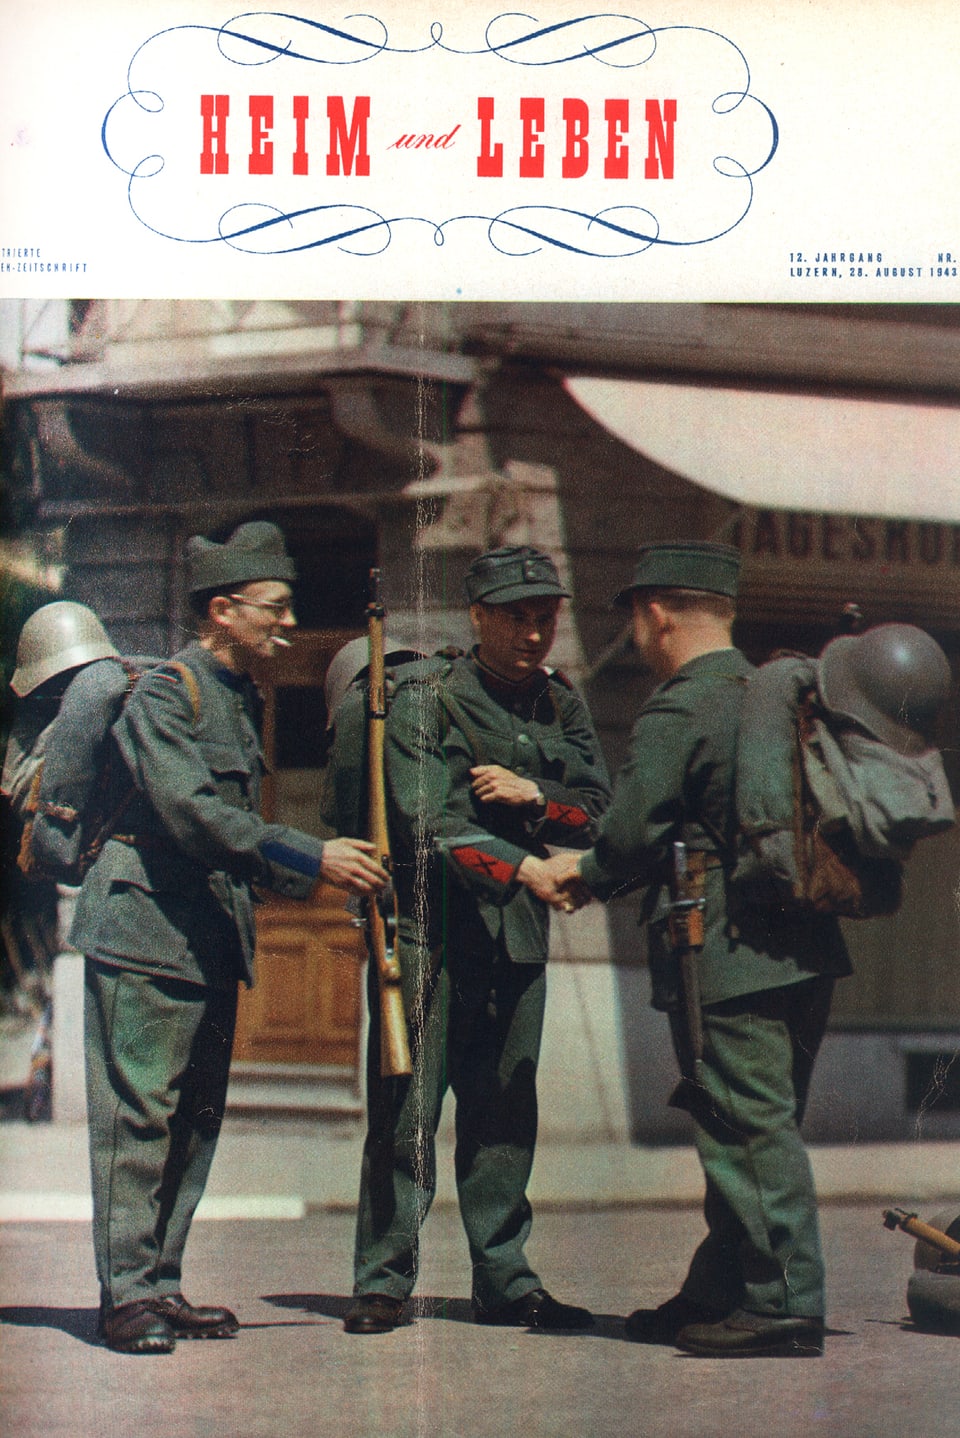 Cover von «Heim und Leben», 12. Jahrgang, 28. August 1943 mit drei Soldaten.